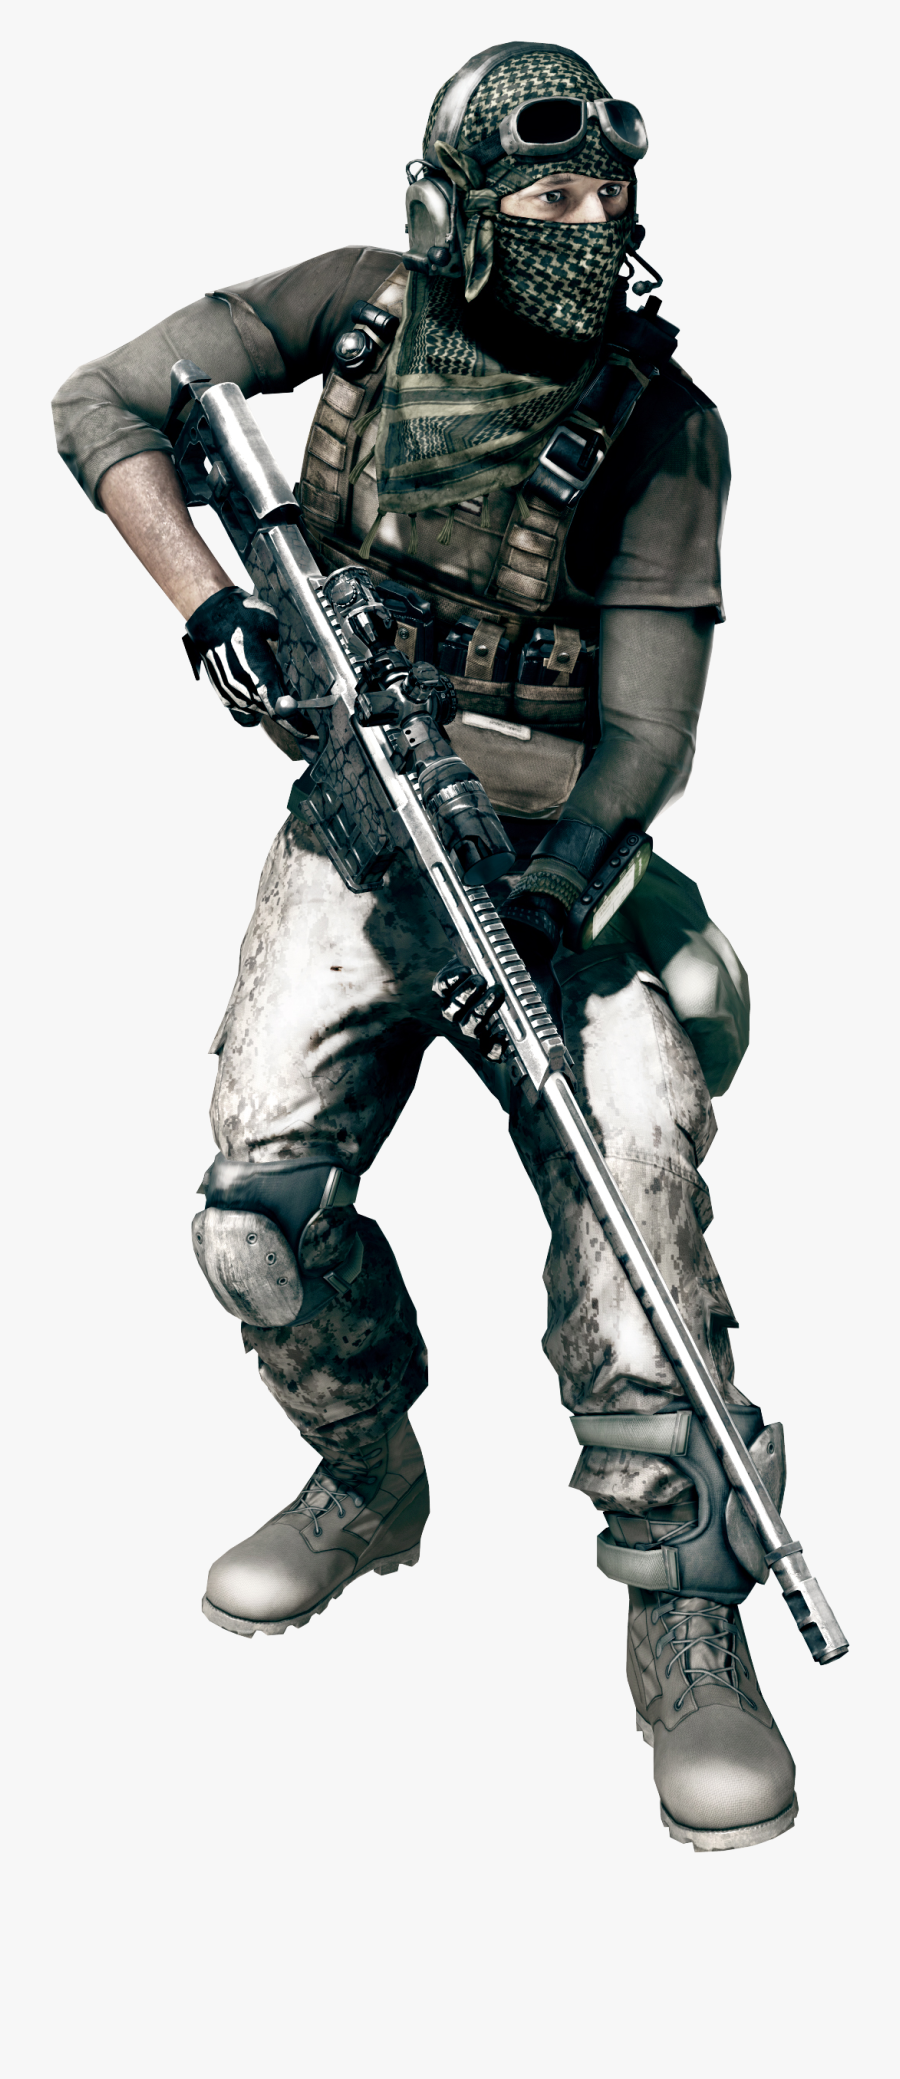 Battlefield Free Download Png - Battlefield 3 Sniper Class, Transparent Clipart